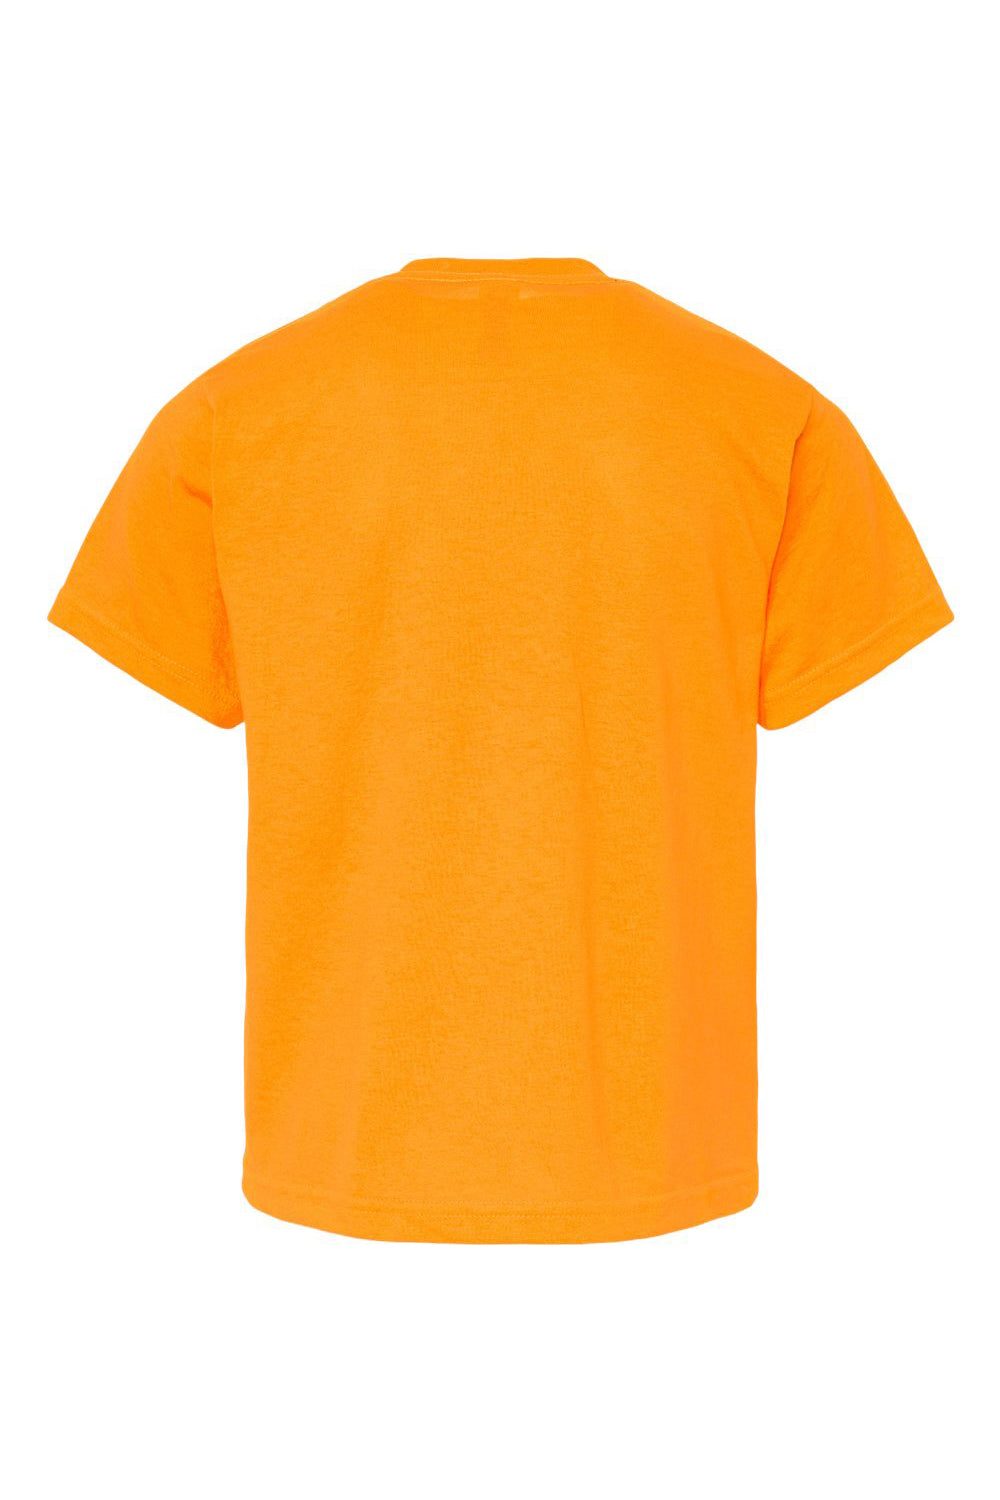 M&O 4850 Youth Gold Soft Touch Short Sleeve Crewneck T-Shirt Safety Orange Flat Back